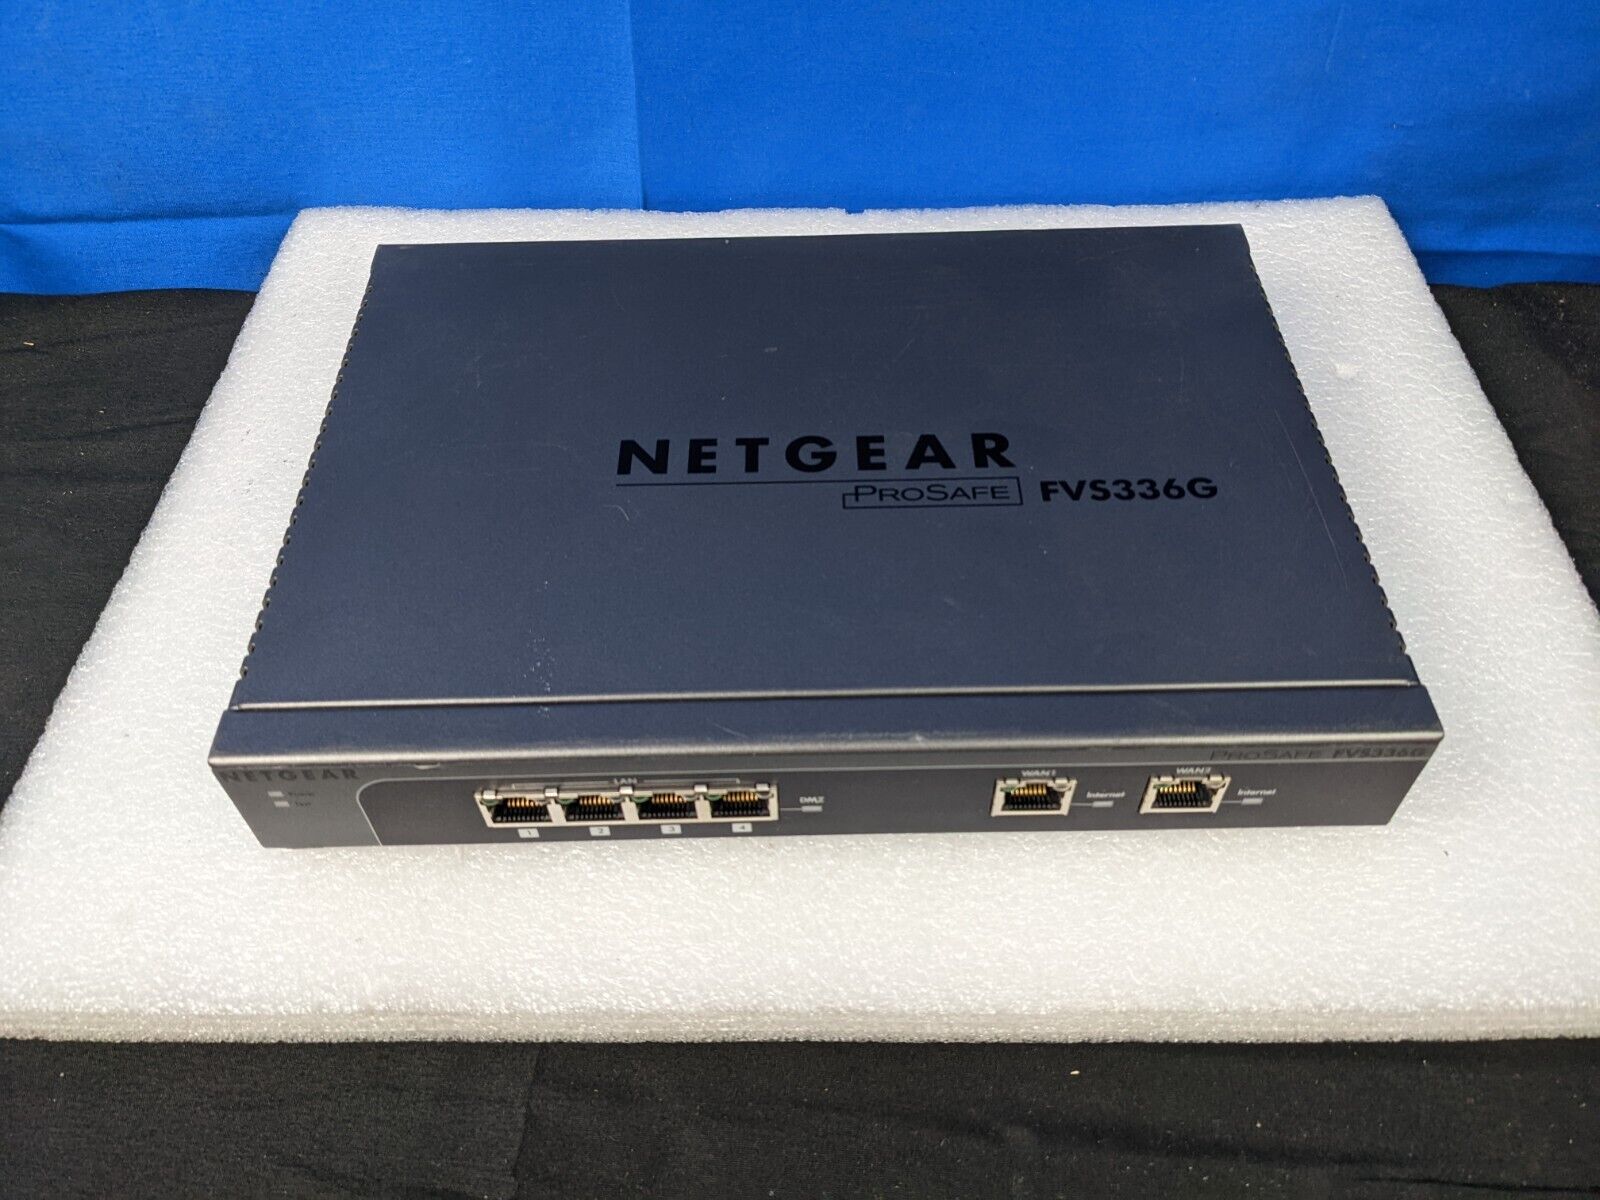 Netgear FVS336G ProSafe Gigabit Firewall Router 2 WAN 4 LAN Ports